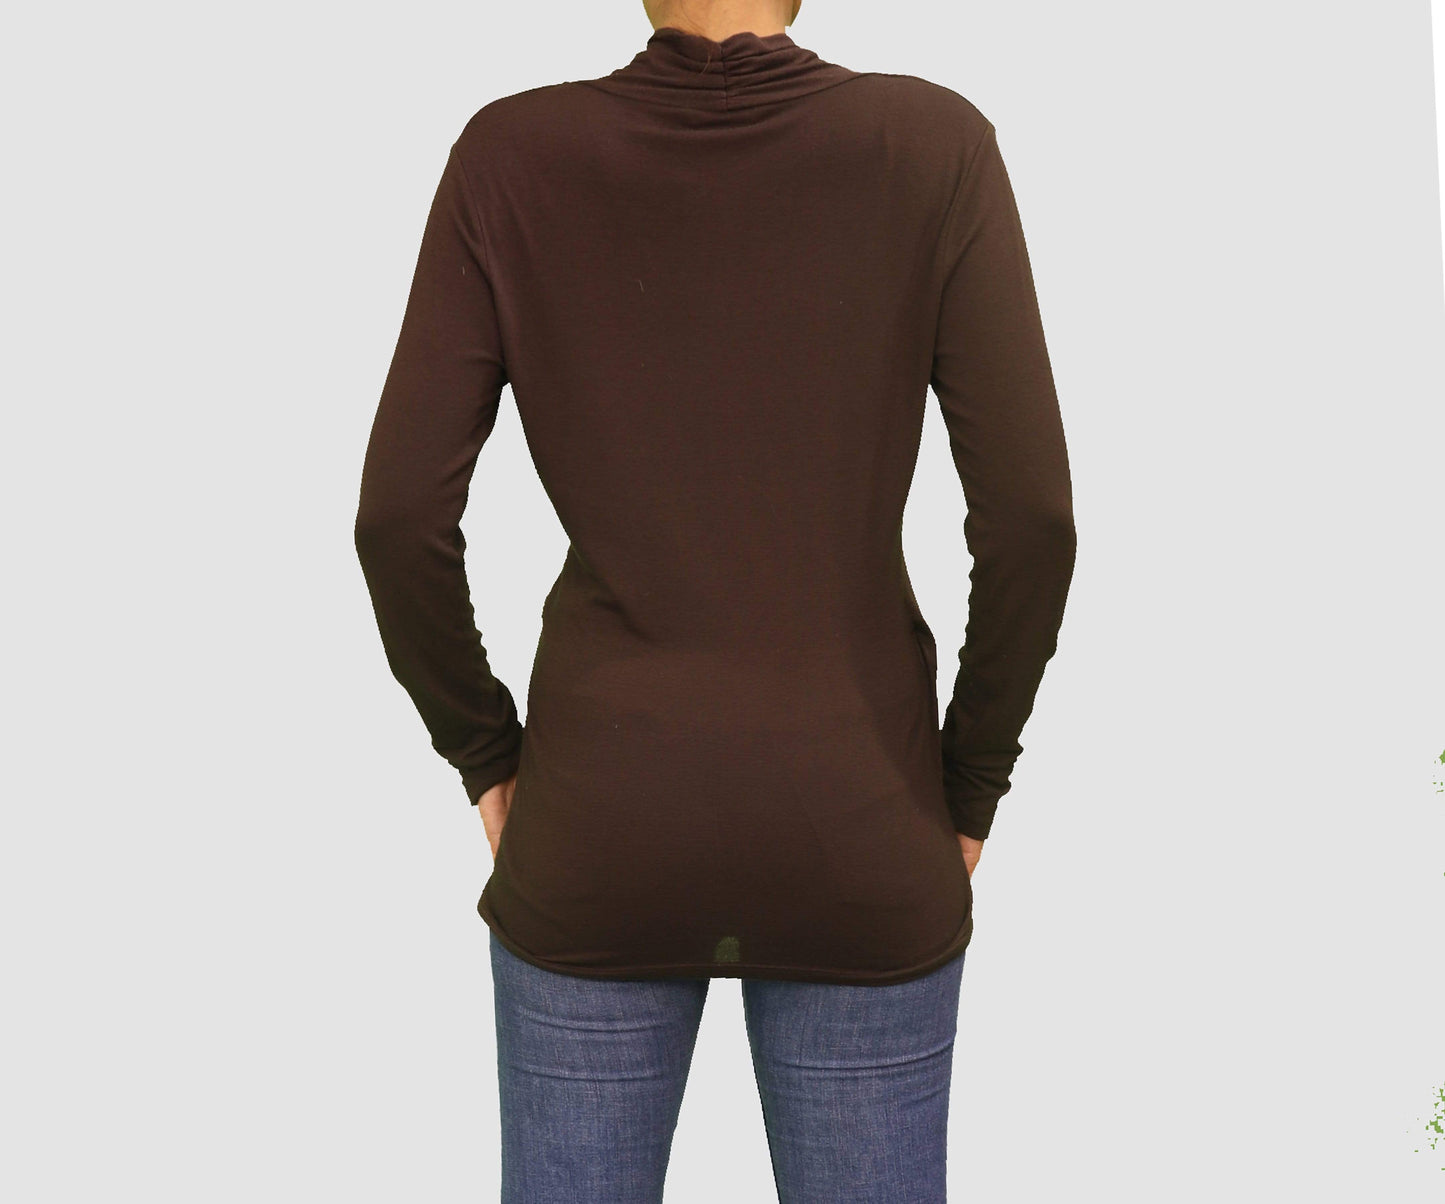 BANANA REPUBLIC Womens Tops Medium / Brown Long Sleeve Top